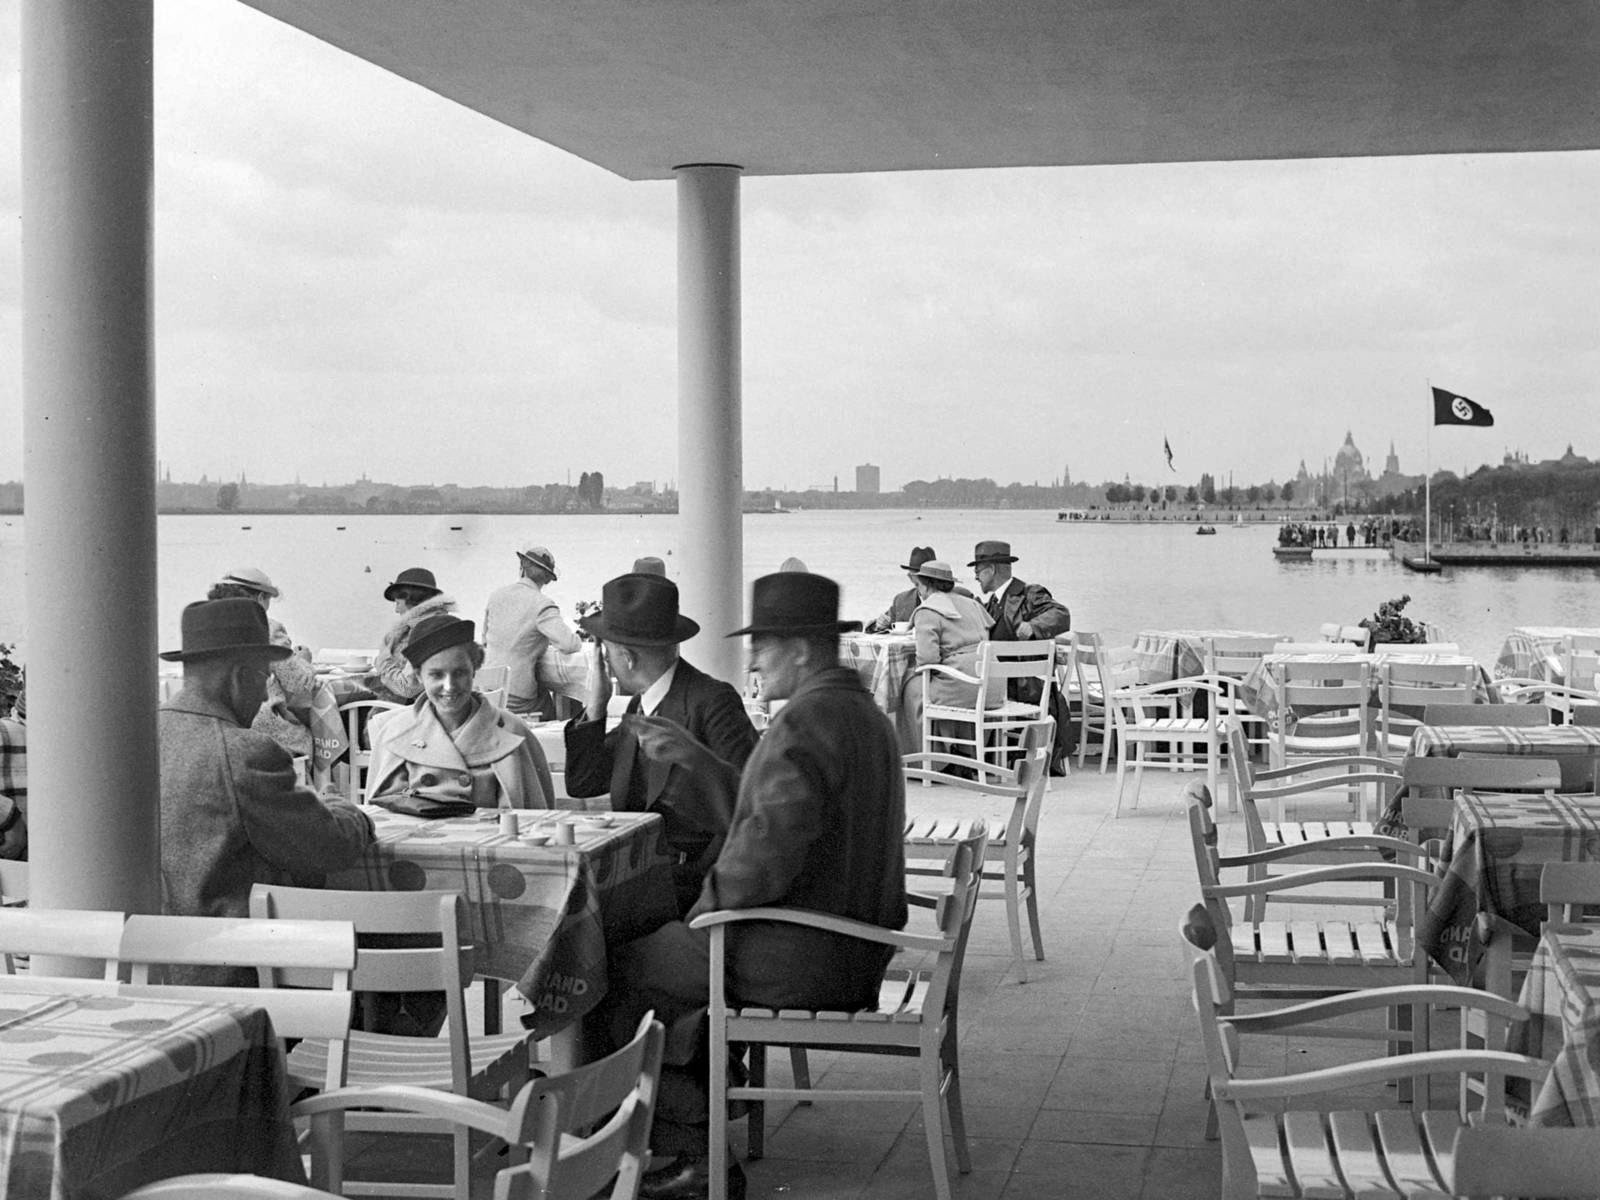 Strandbad-Restaurant am Tag der Maschsee-Einweihung am 21. Mai 1936. (HAZ-Hauschild-Archiv, Historisches Museum Hannover)